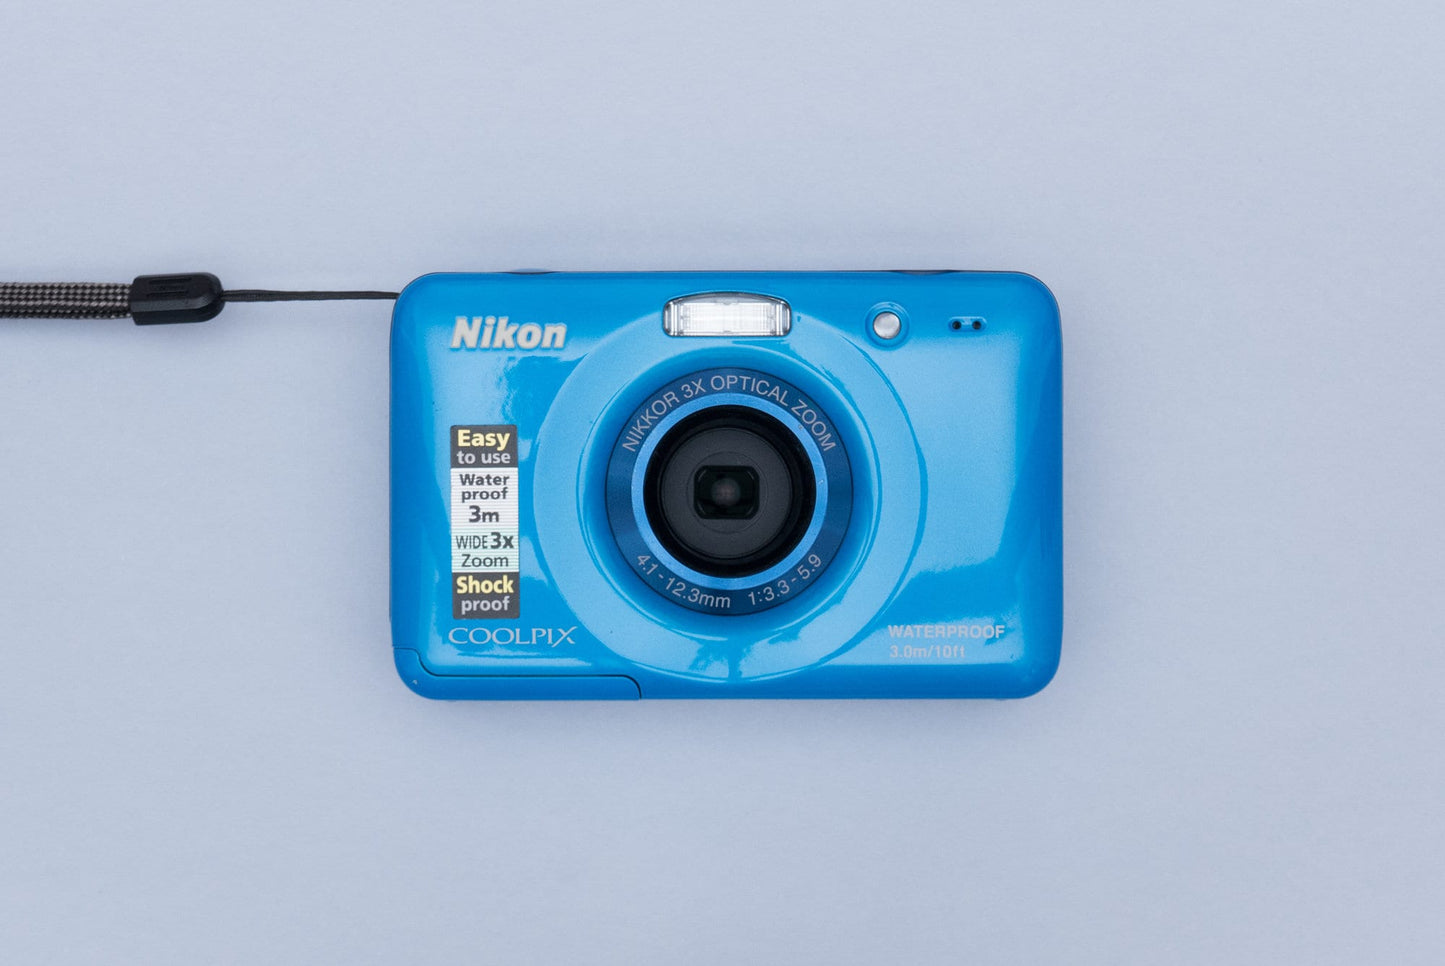 Nikon Coolpix S30 Compact Digital Camera